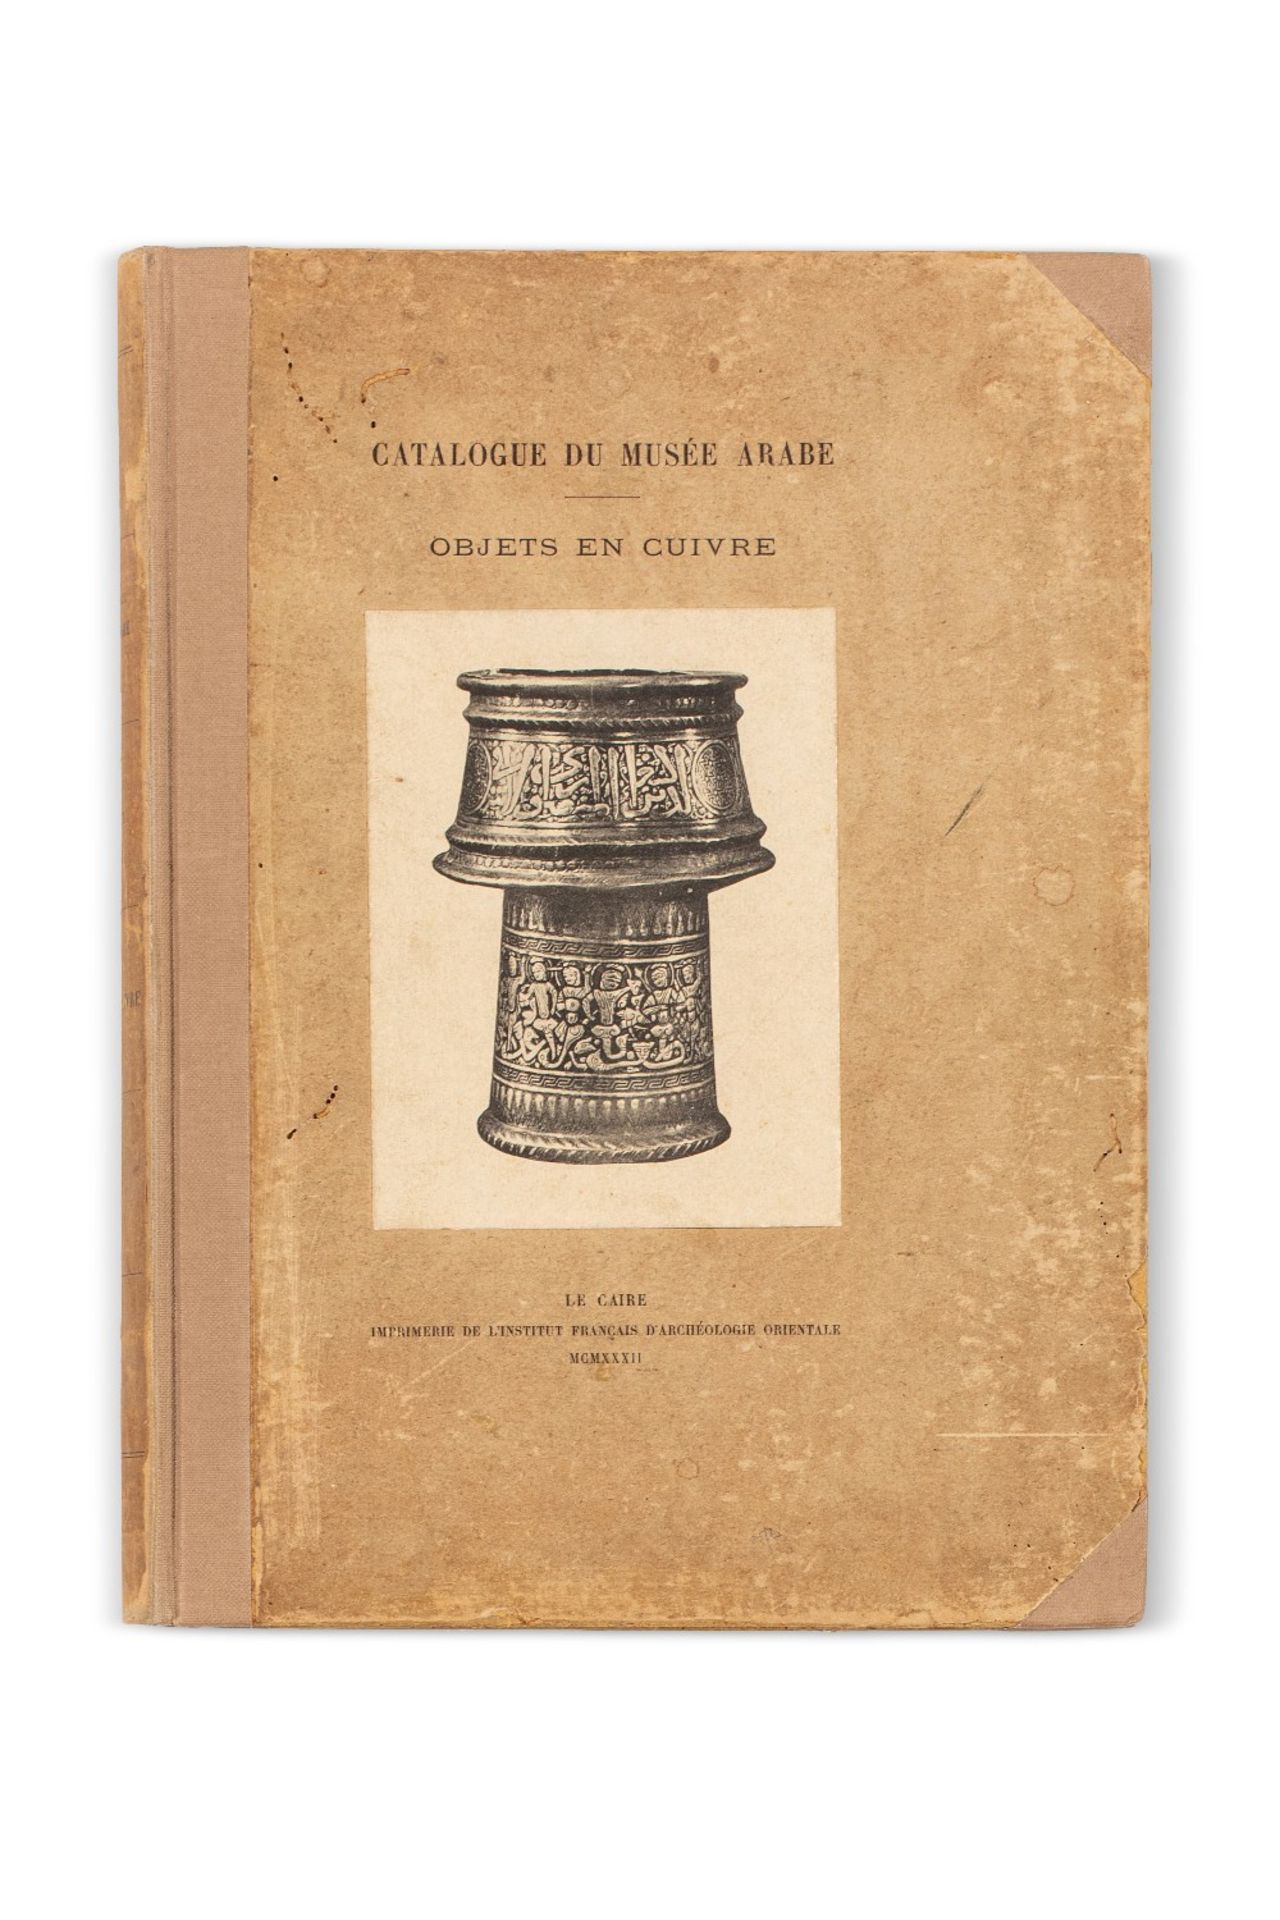 WIET (Gaston)Catalogue général du Musée arabe du Caire. Objets en cuivre. Le Caire, Imprimé de l'